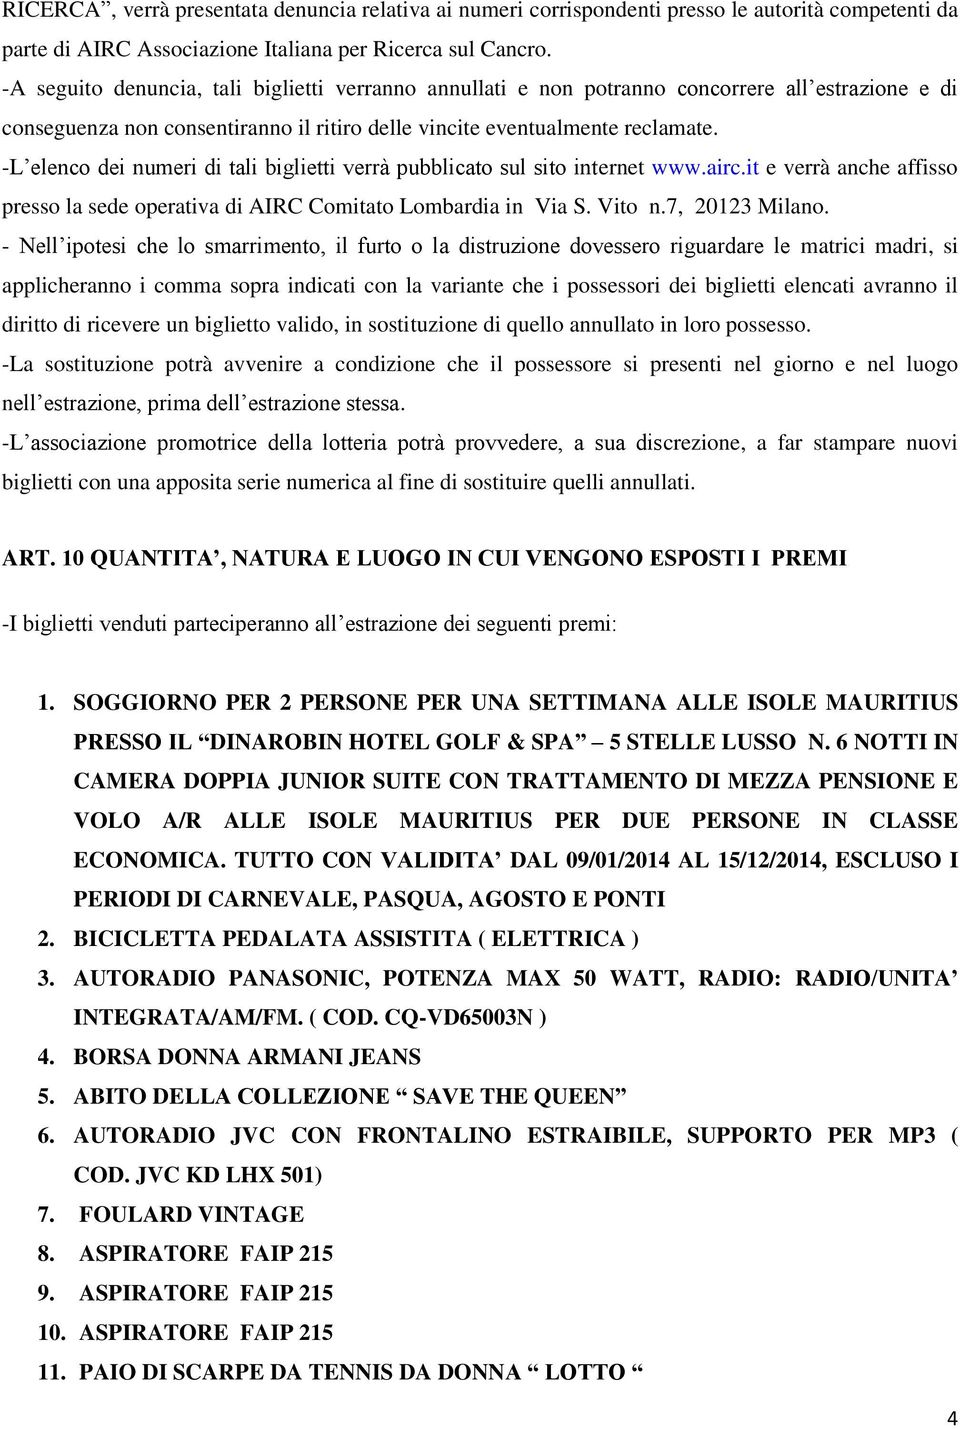 -L elenco dei numeri di tali biglietti verrà pubblicato sul sito internet www.airc.it e verrà anche affisso presso la sede operativa di AIRC Comitato Lombardia in Via S. Vito n.7, 20123 Milano.